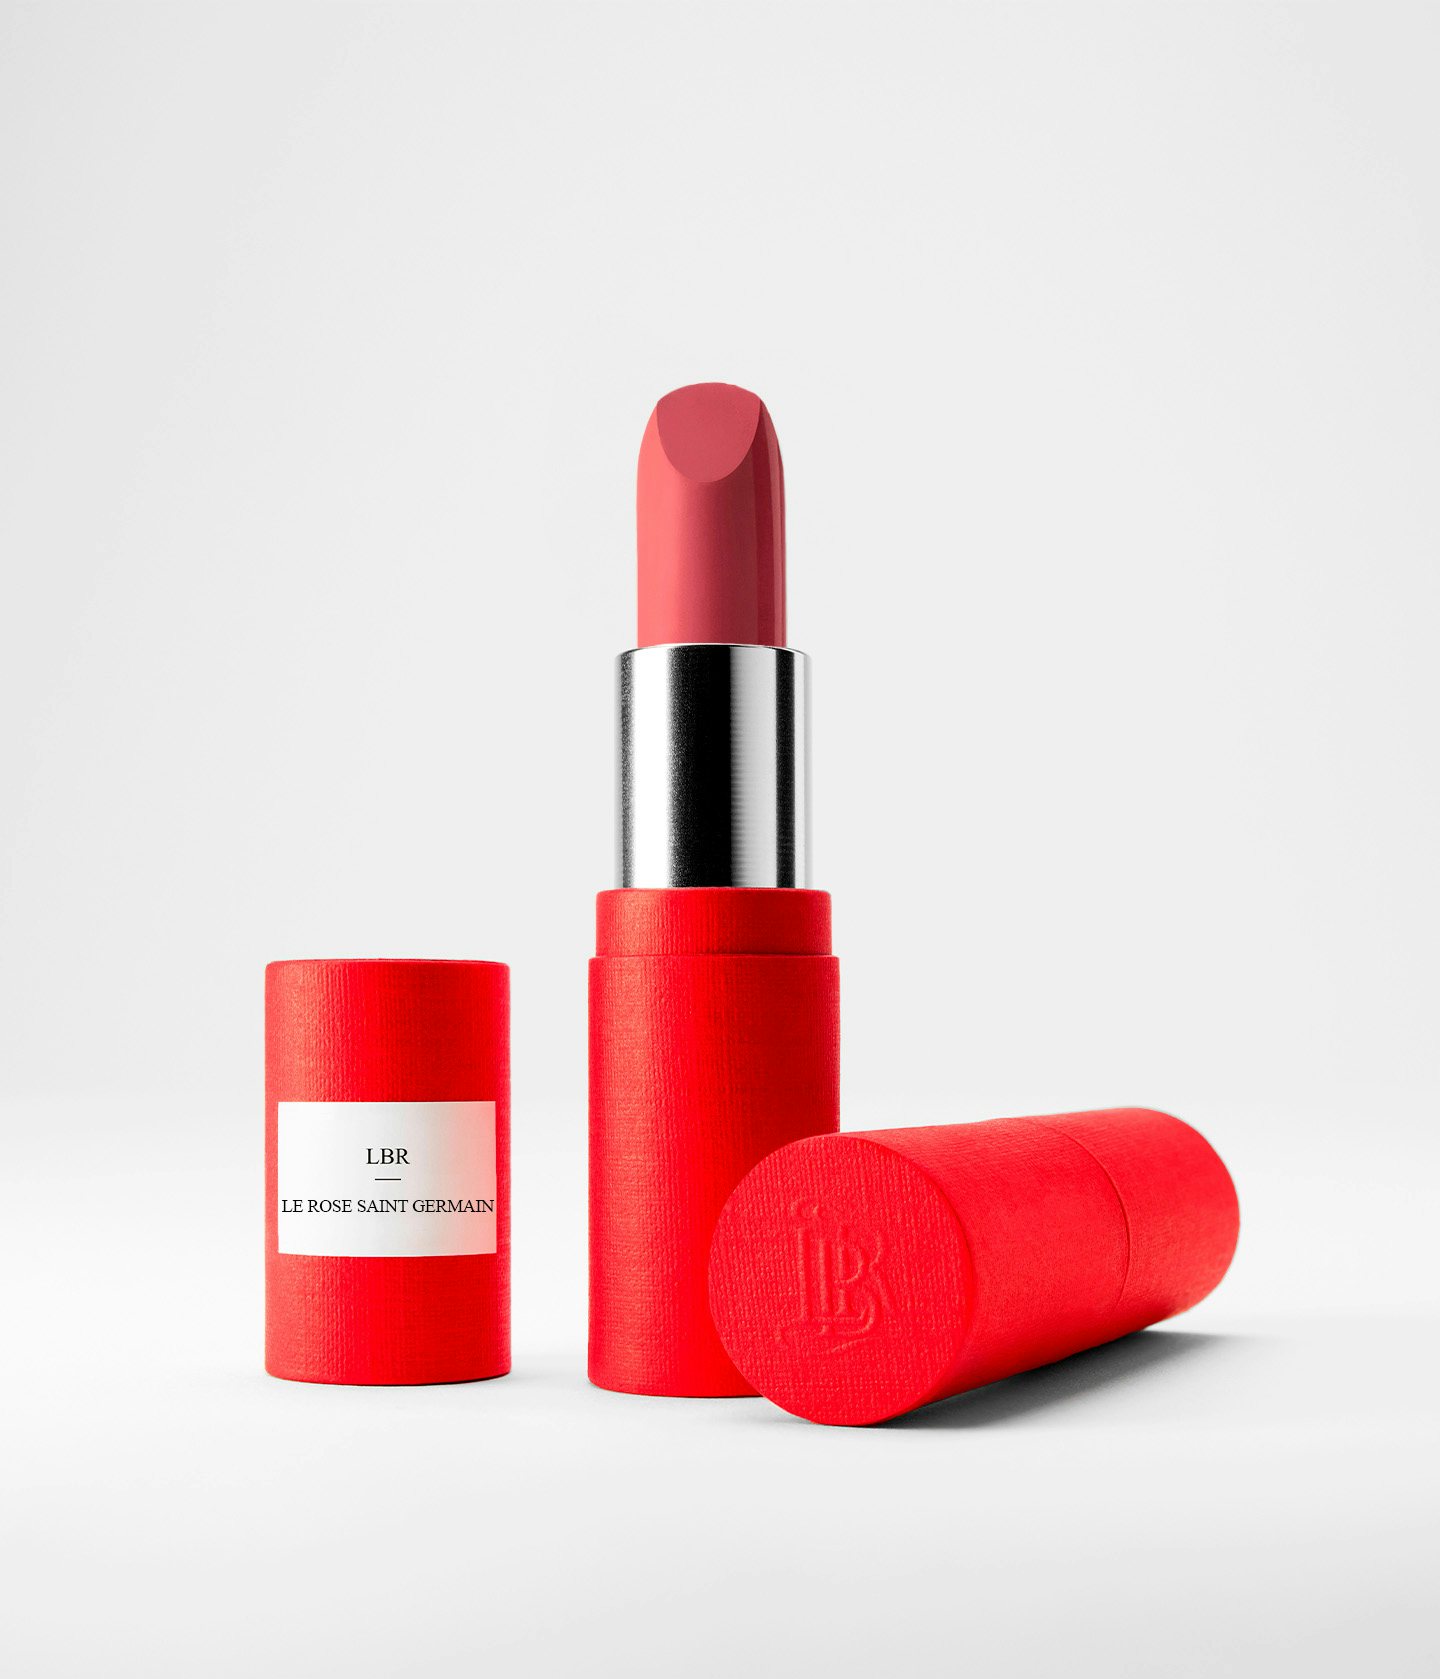 La bouche rouge Le Rose Saint Germain lipstick in the red paper case